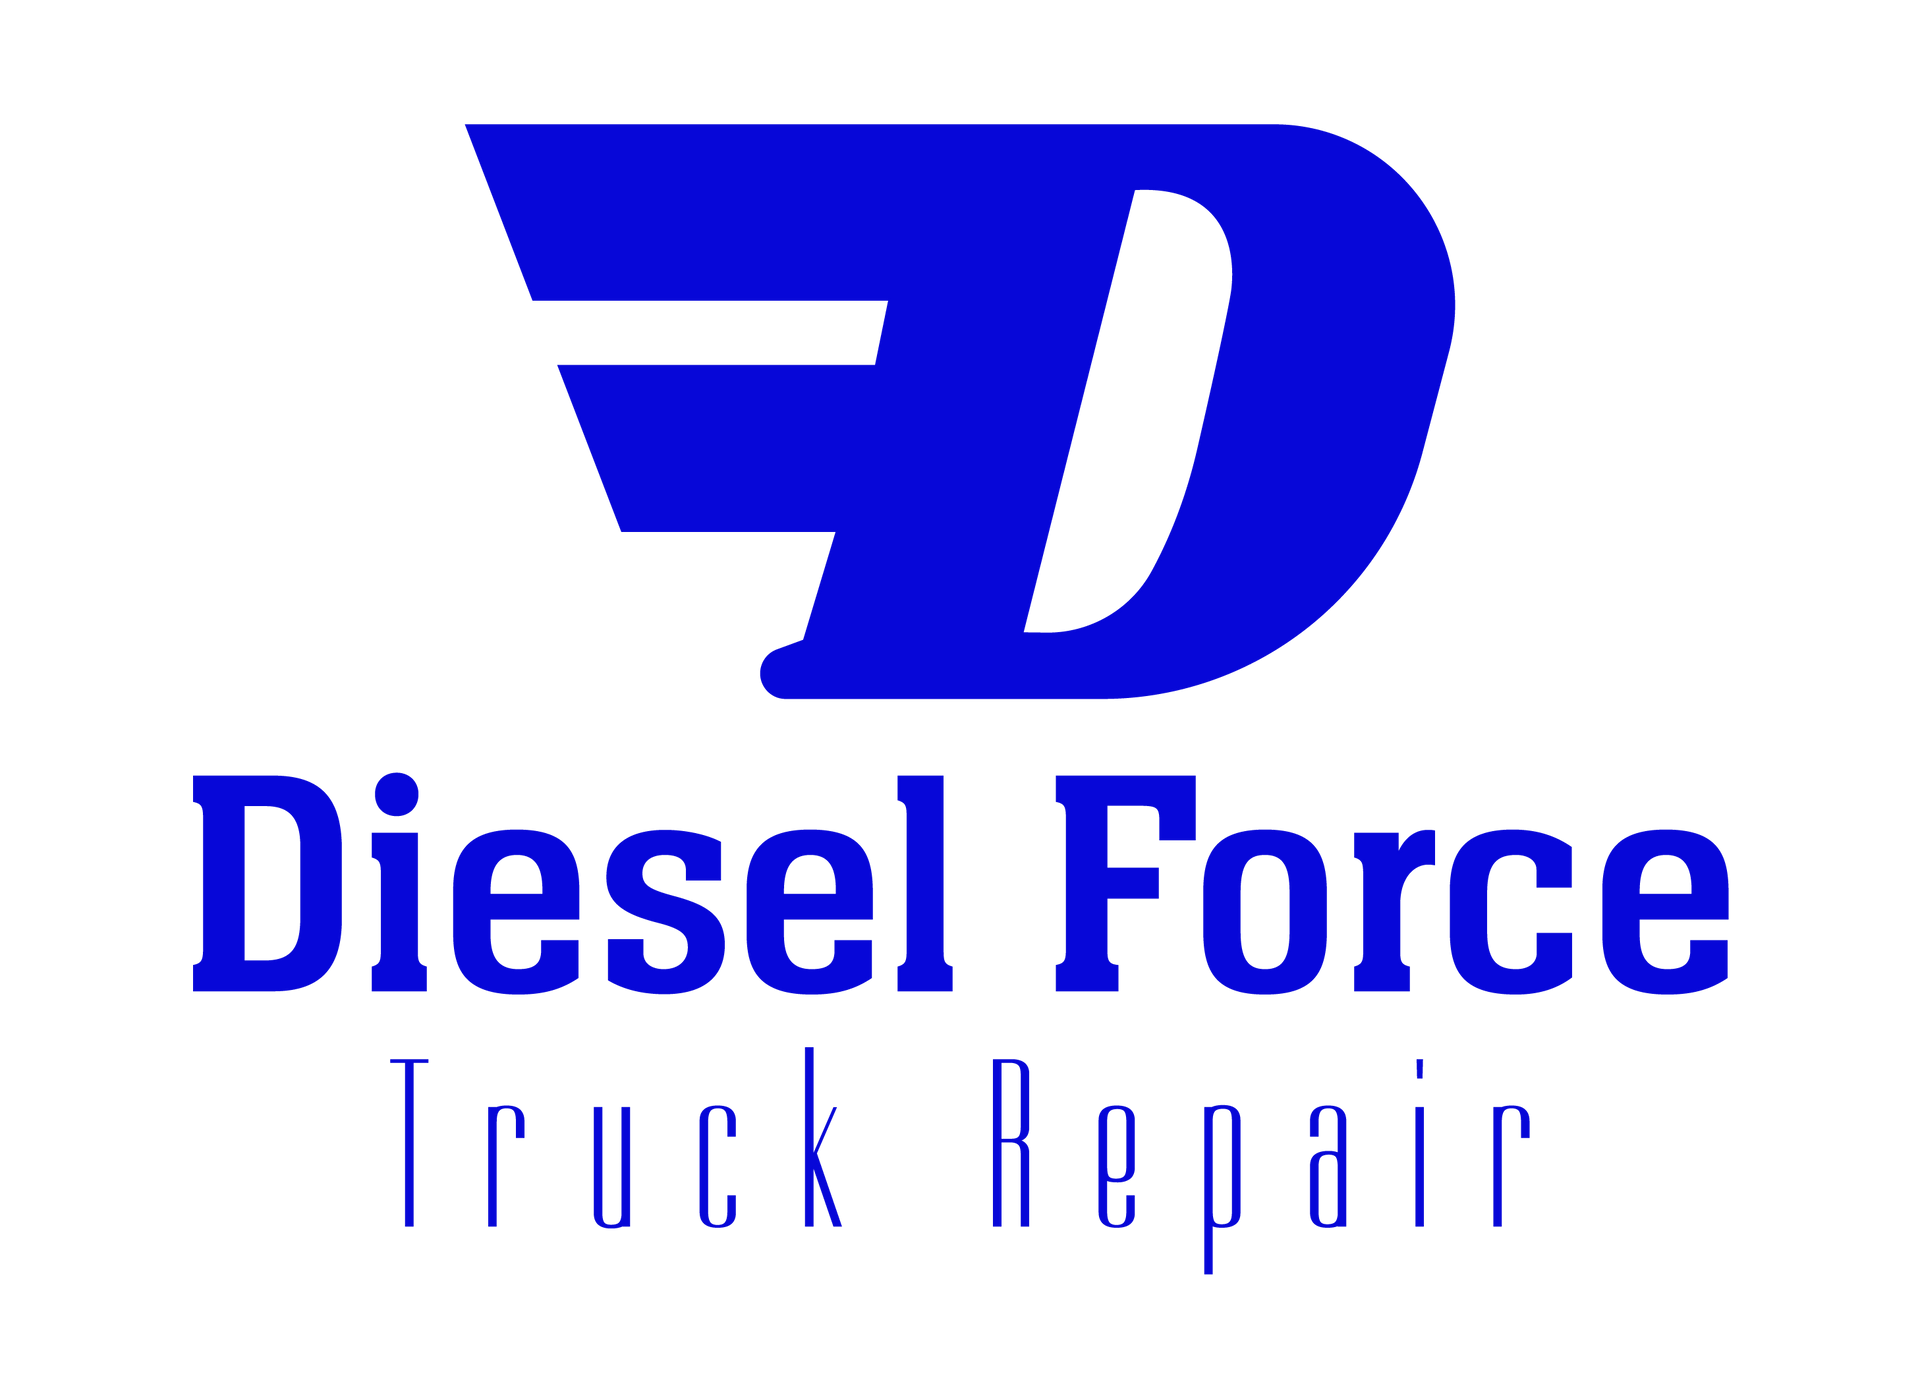 Diesel Force Truck Repair